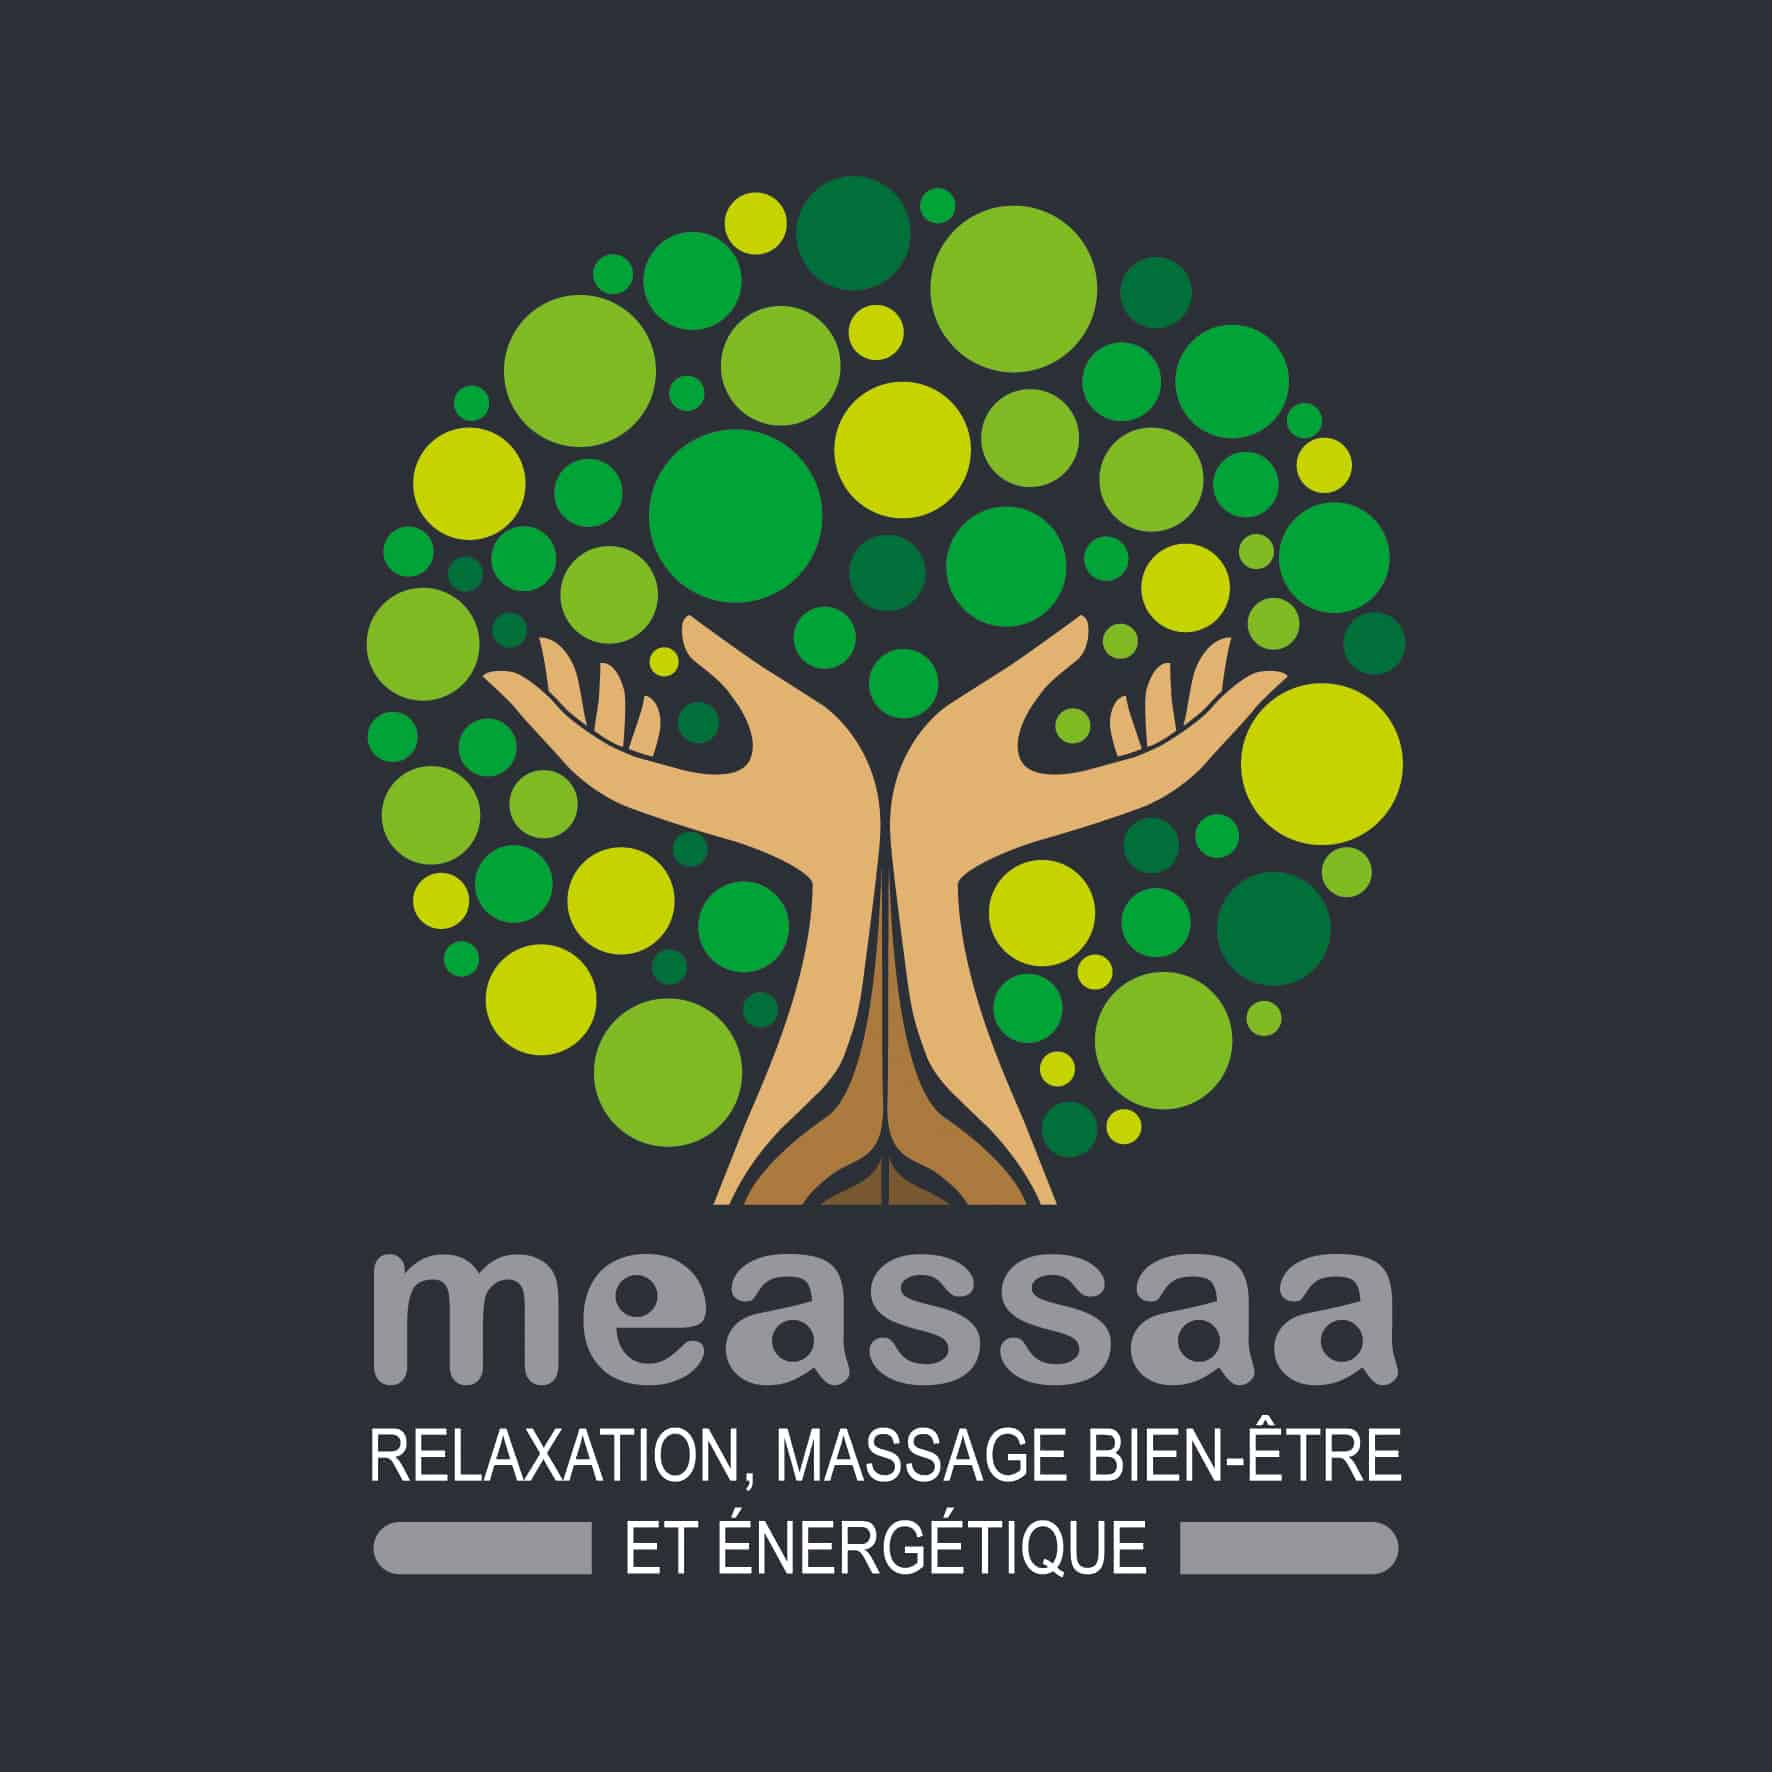 Meassaa – Relaxation, Massage bien-être et énergétique